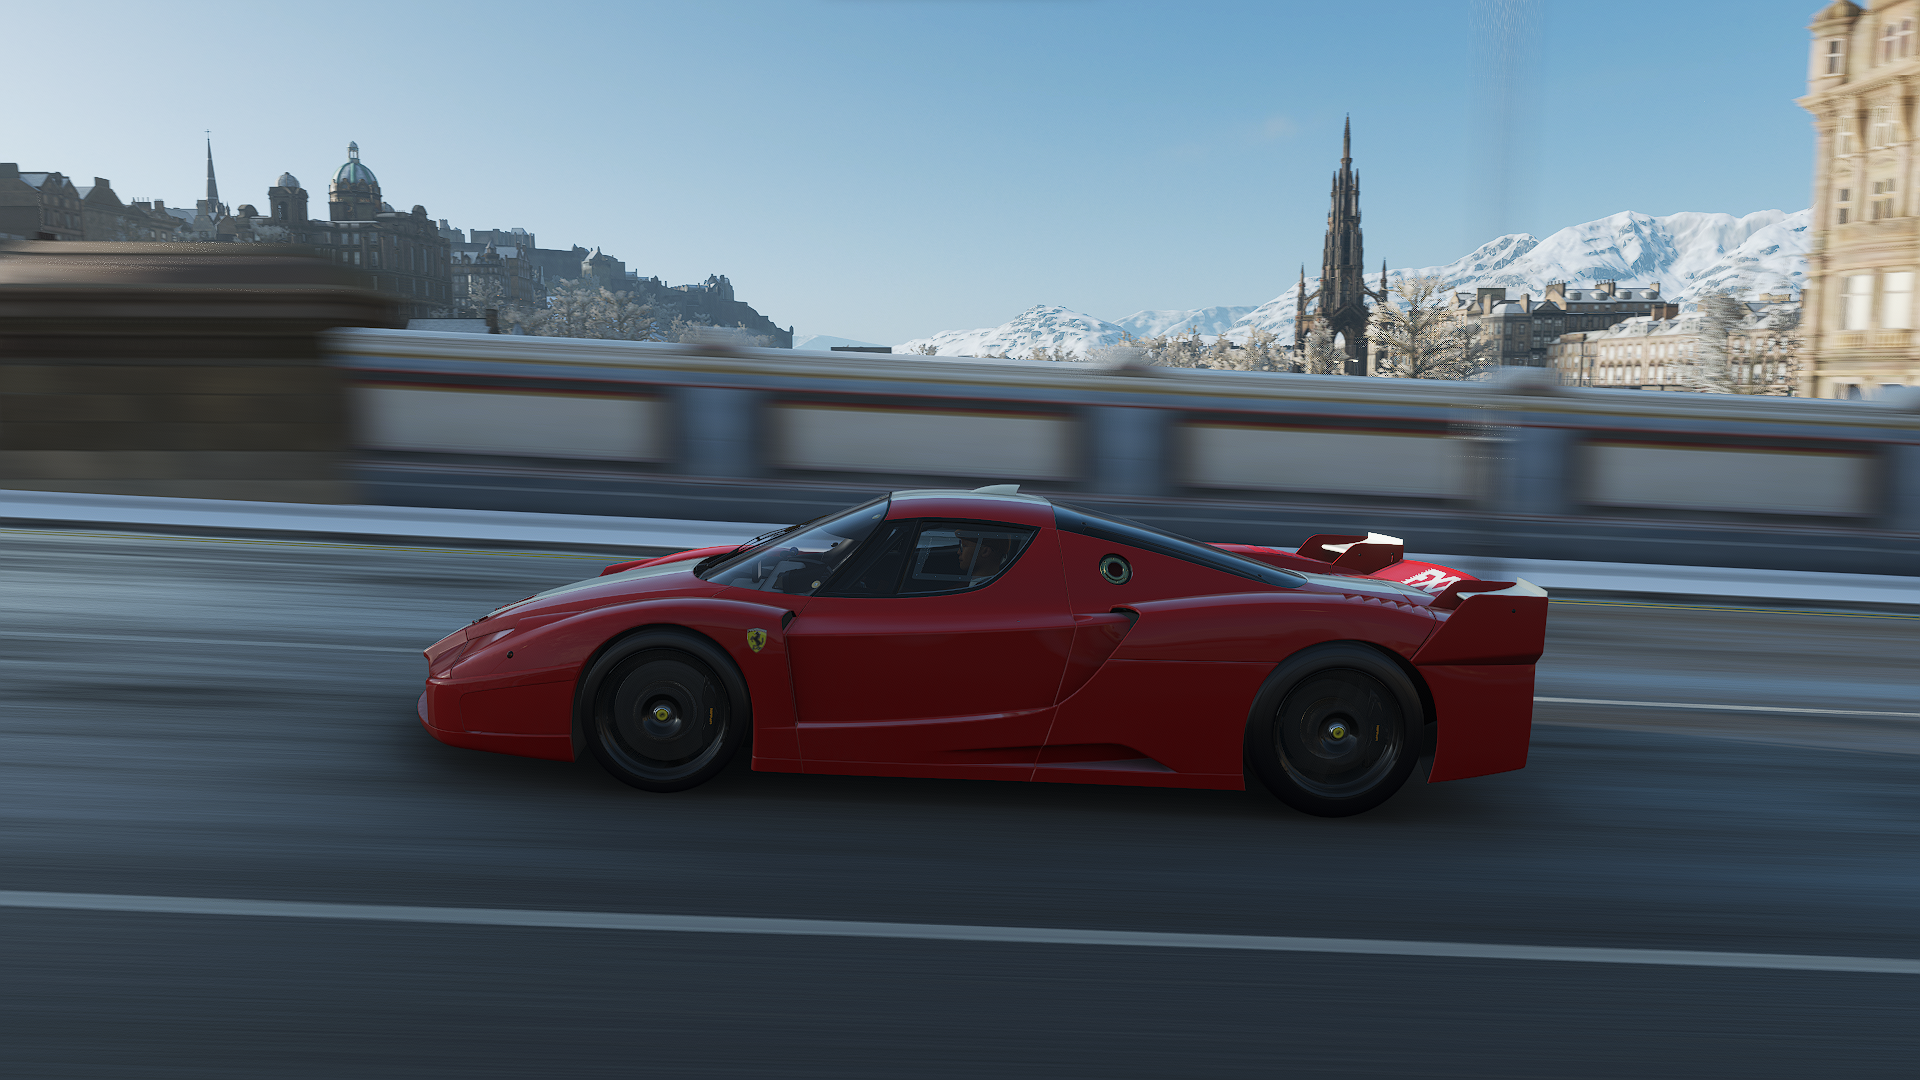 Forza Forza Horizon Forza Horizon 4 Car Racing Ferrari Ferrari FXX CGi Video Games Road Blurred Blur 1920x1080